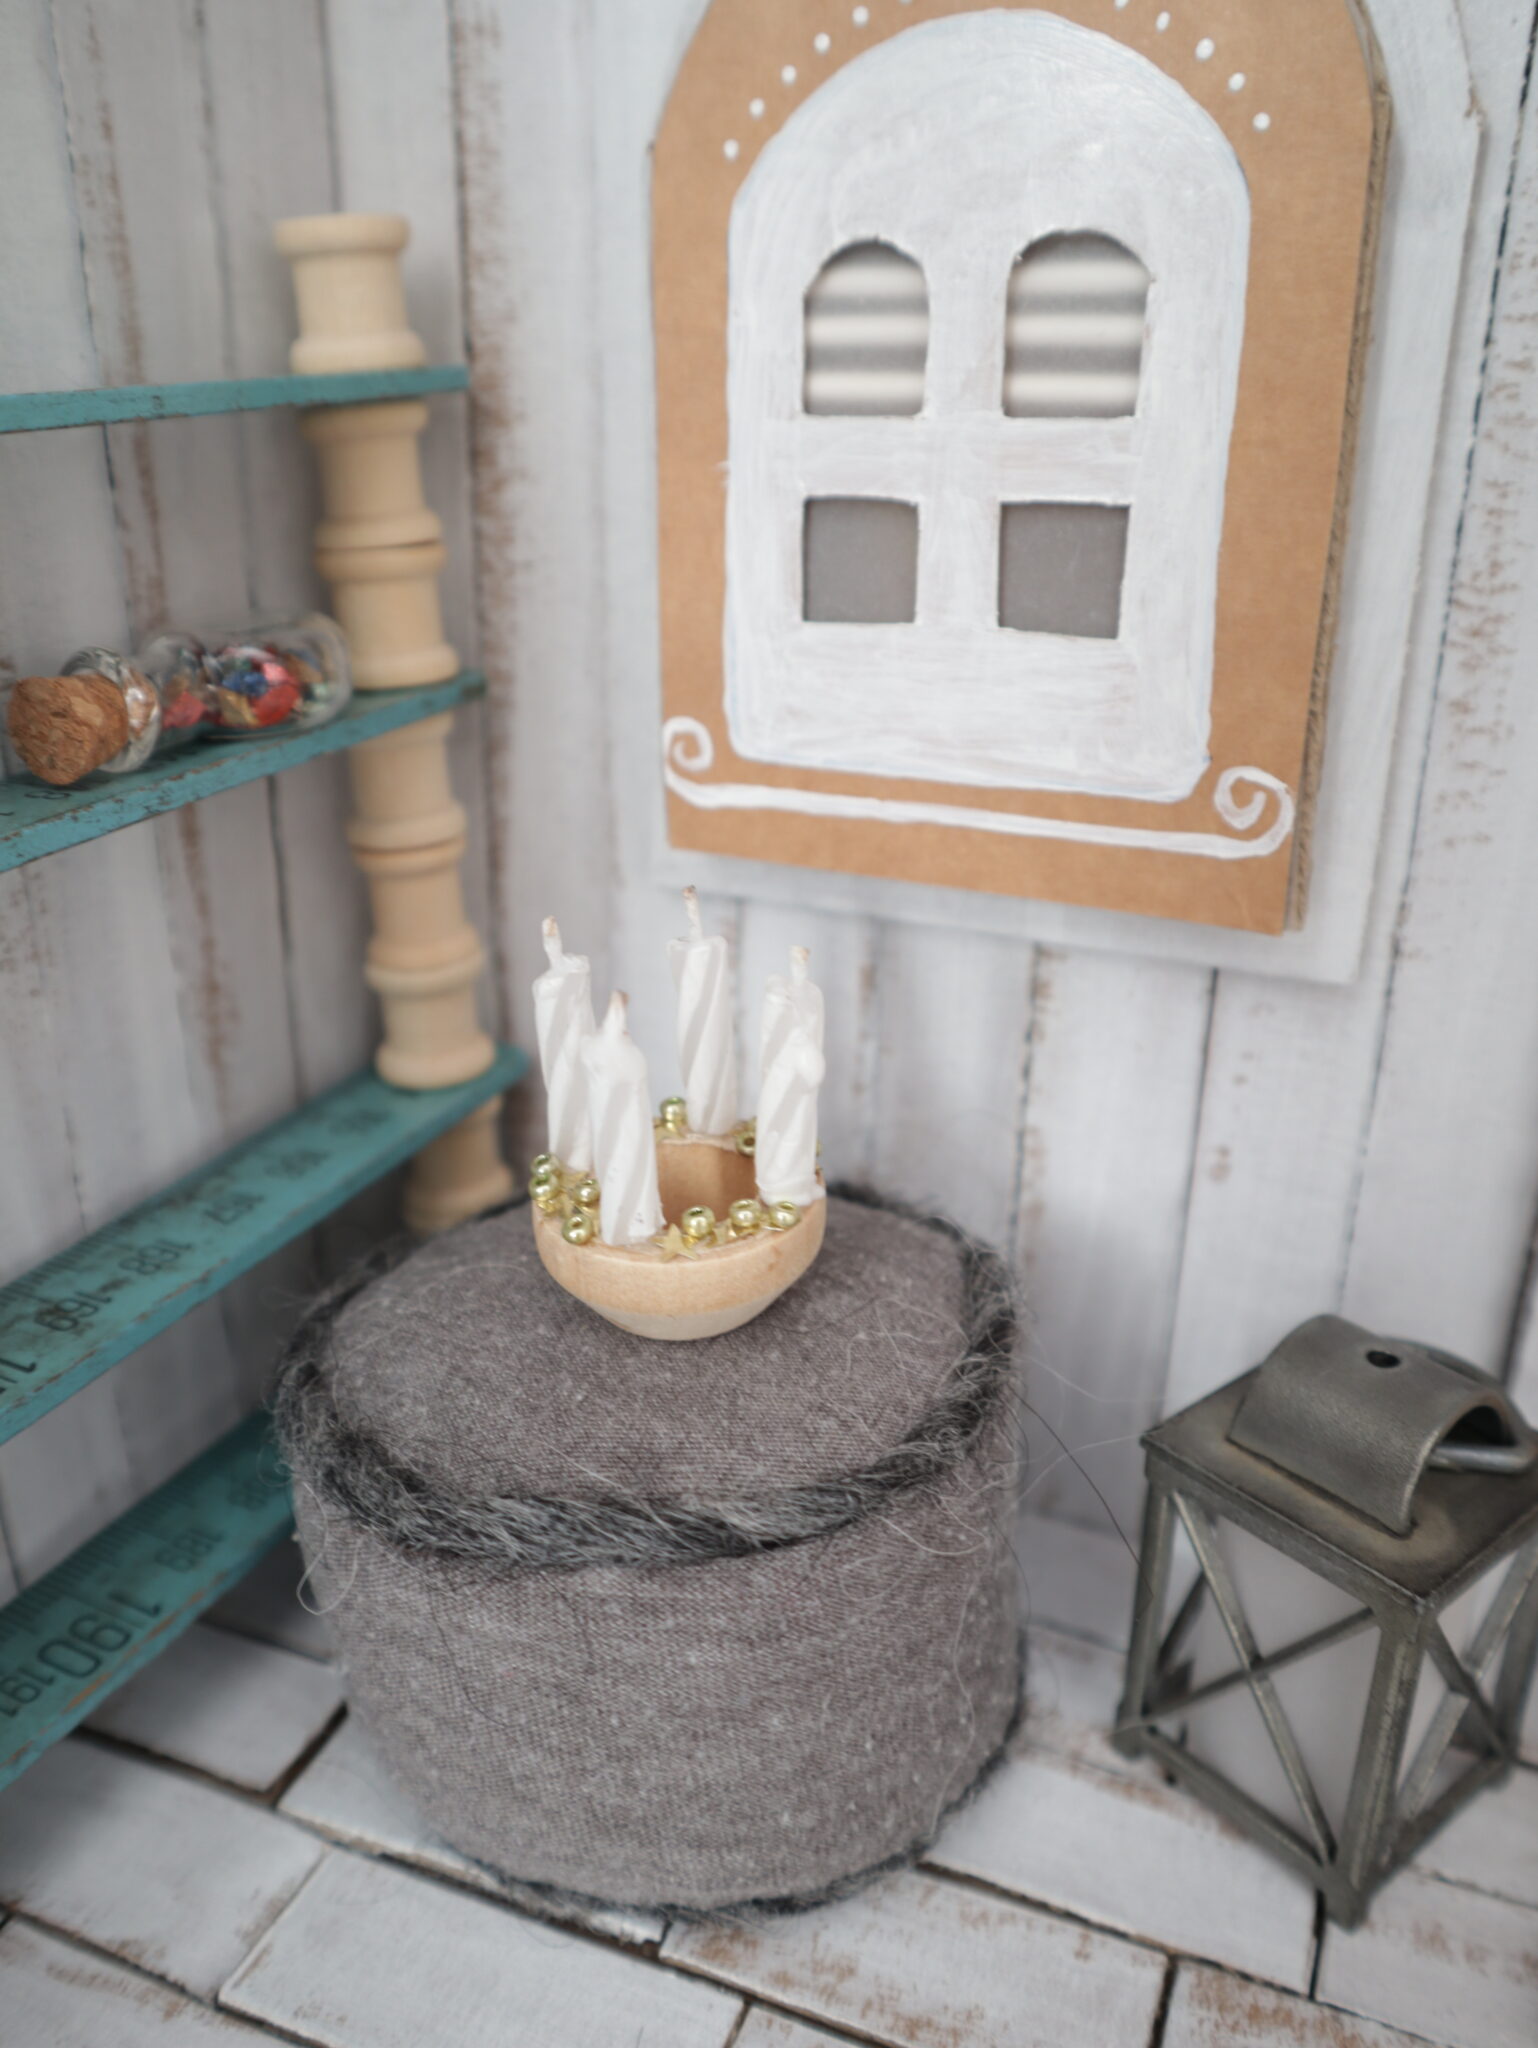 Mini-Adventskranz mit kleinen Stummeln ehemaliger Geburtstagskerzen auf einem Holzring. Der Kranz steht auf einem Mini-Sitzkissen.